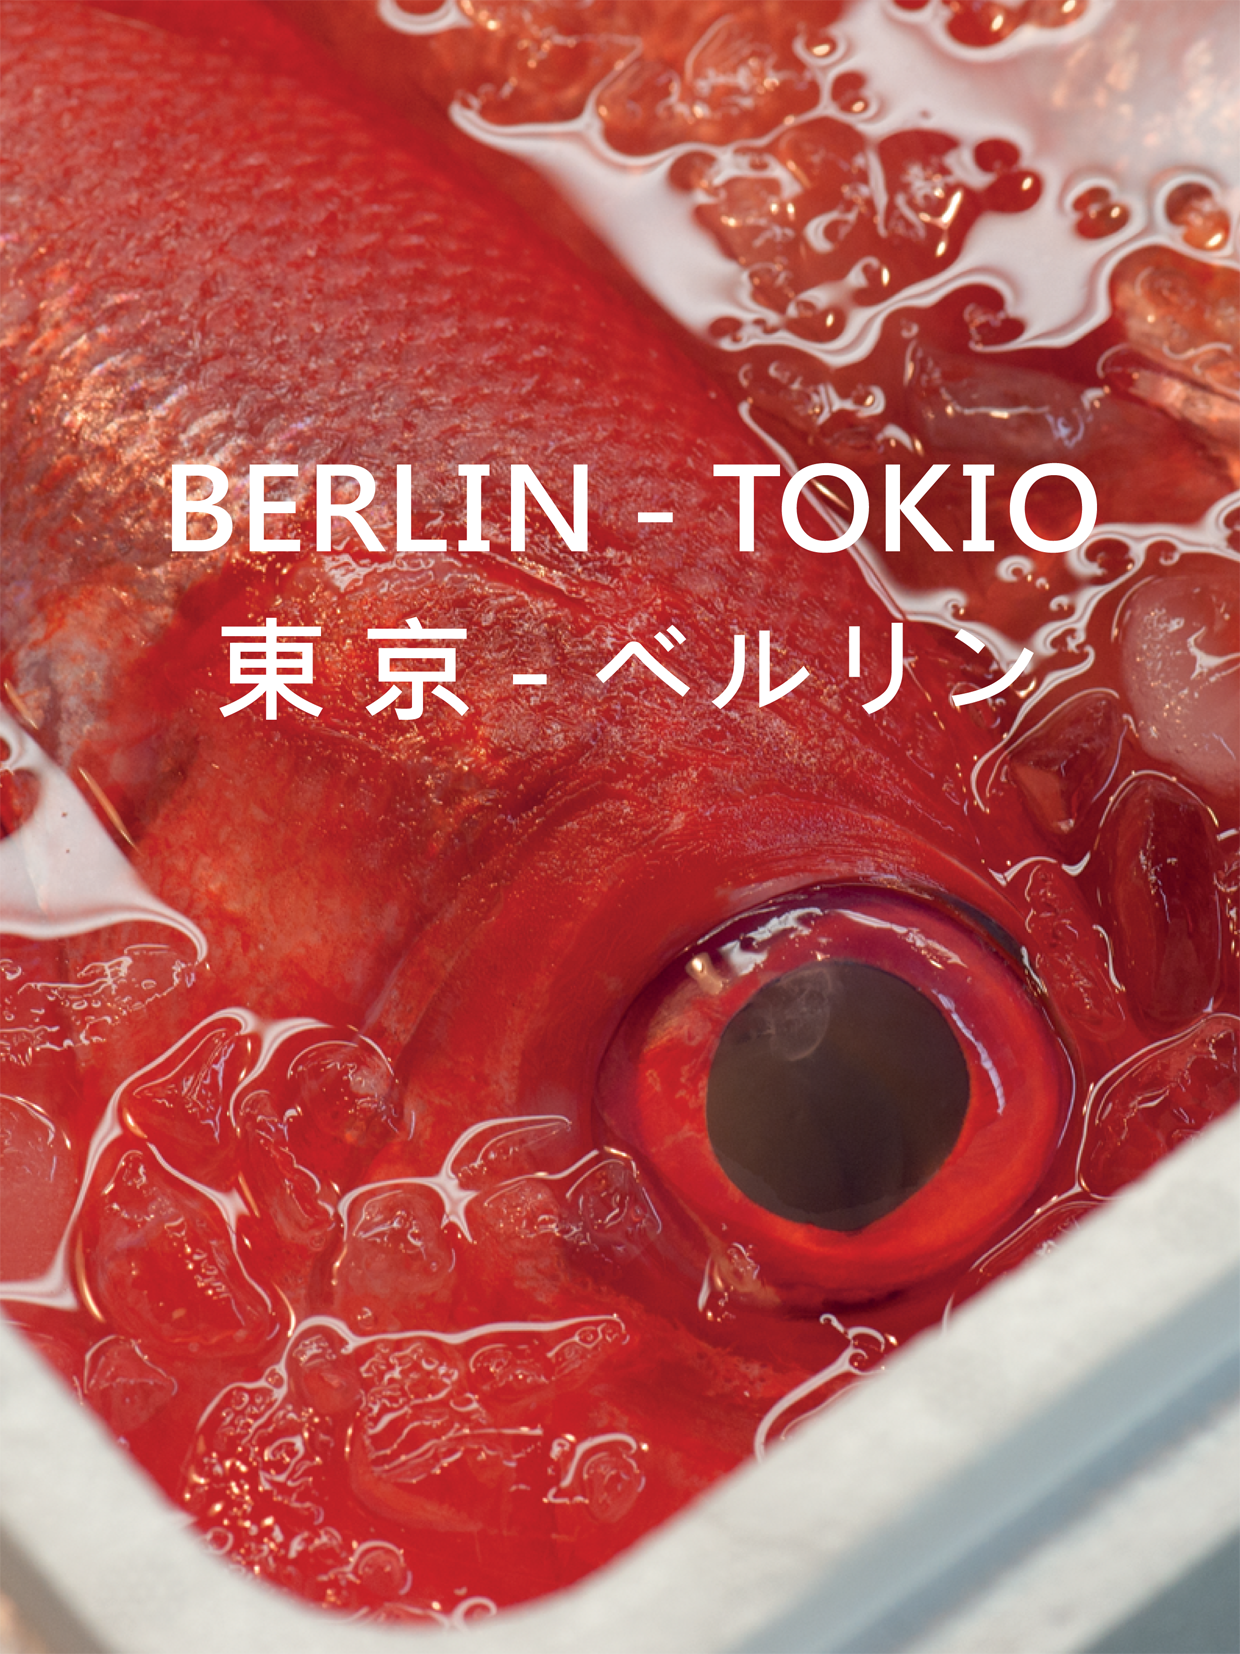 Fotoausstellung berlin - Tokio